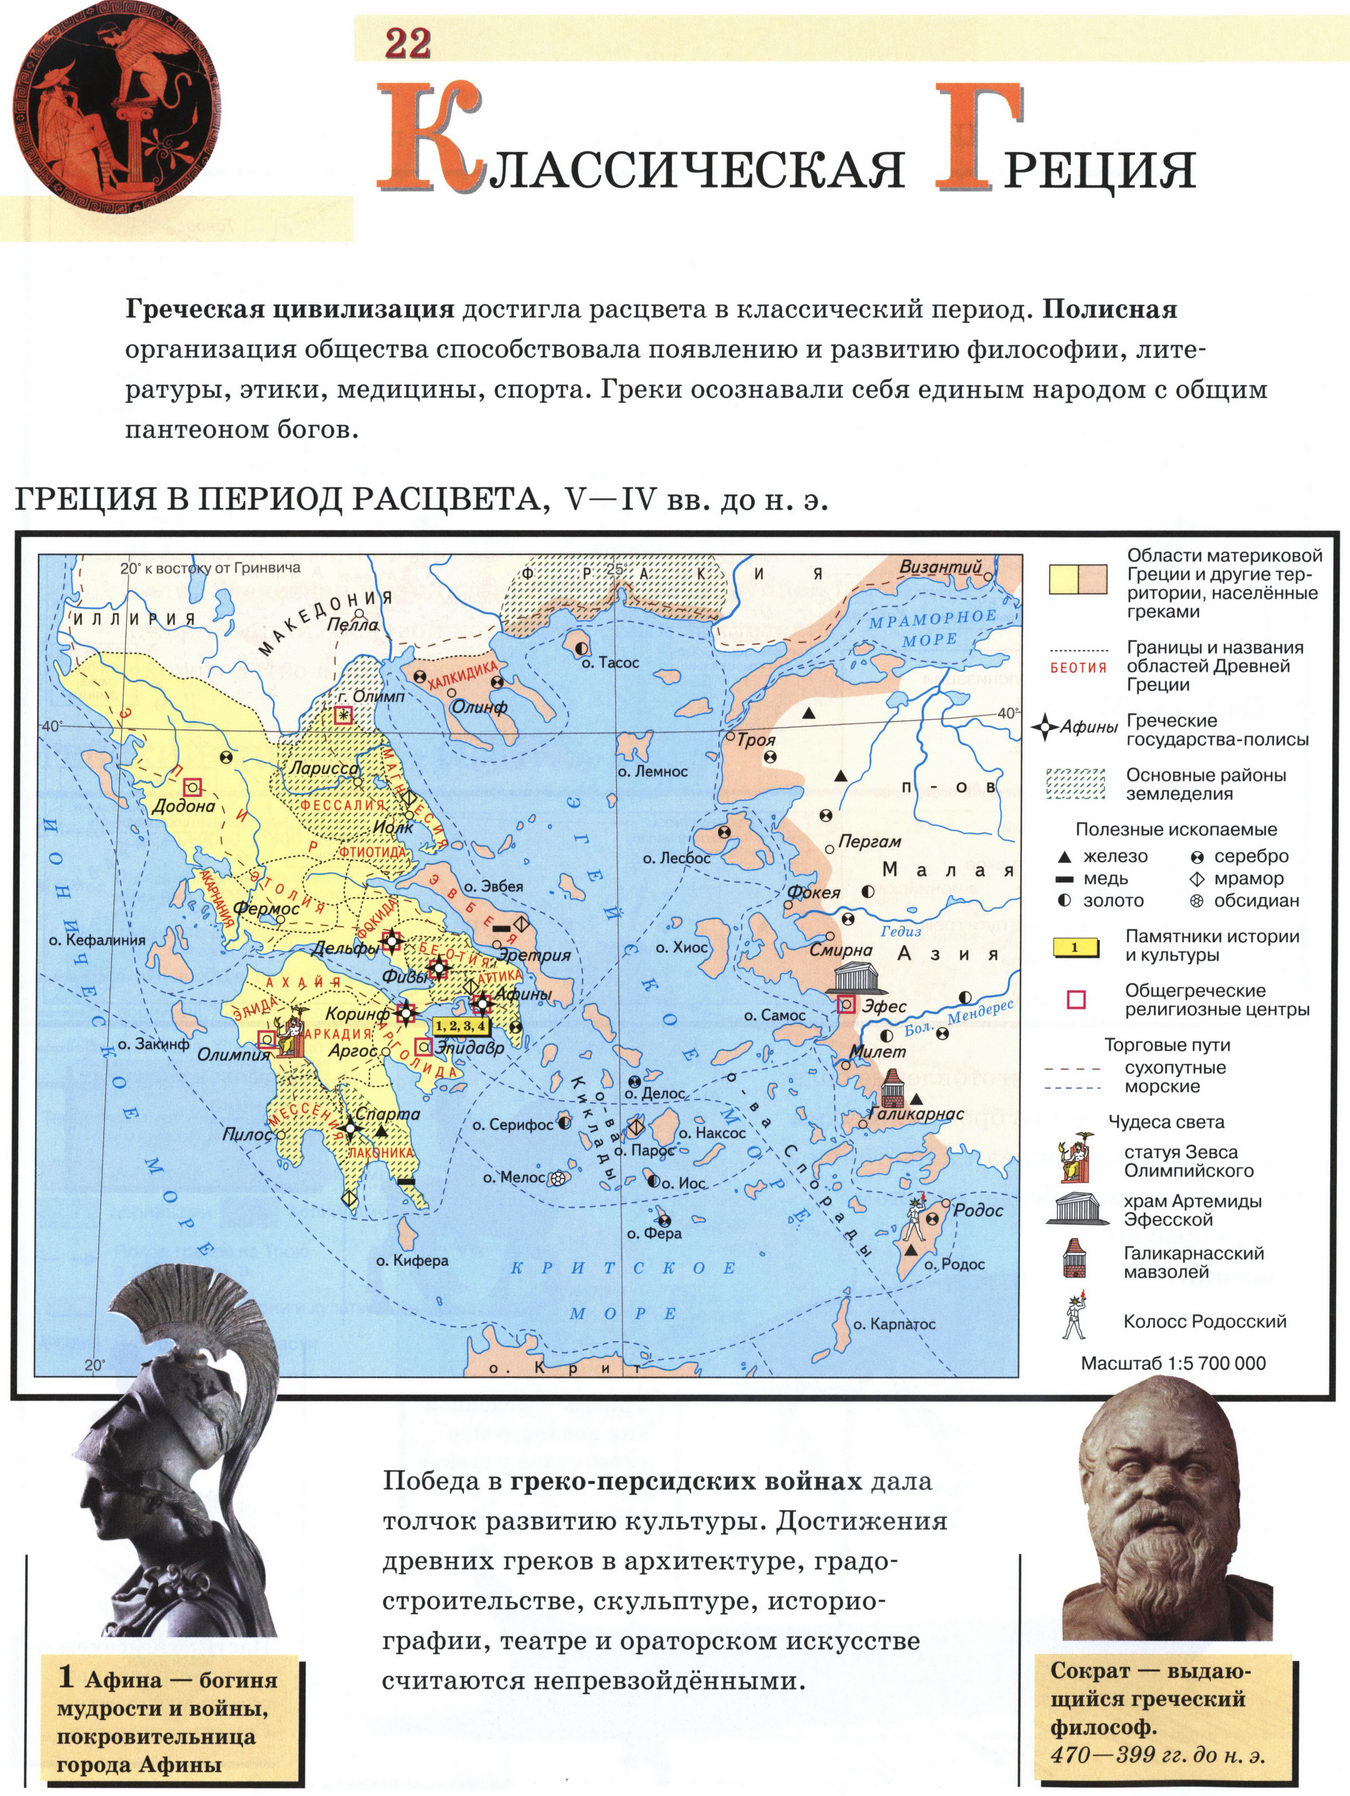 Классическая Греция - карта атласа по истории Древнего мира